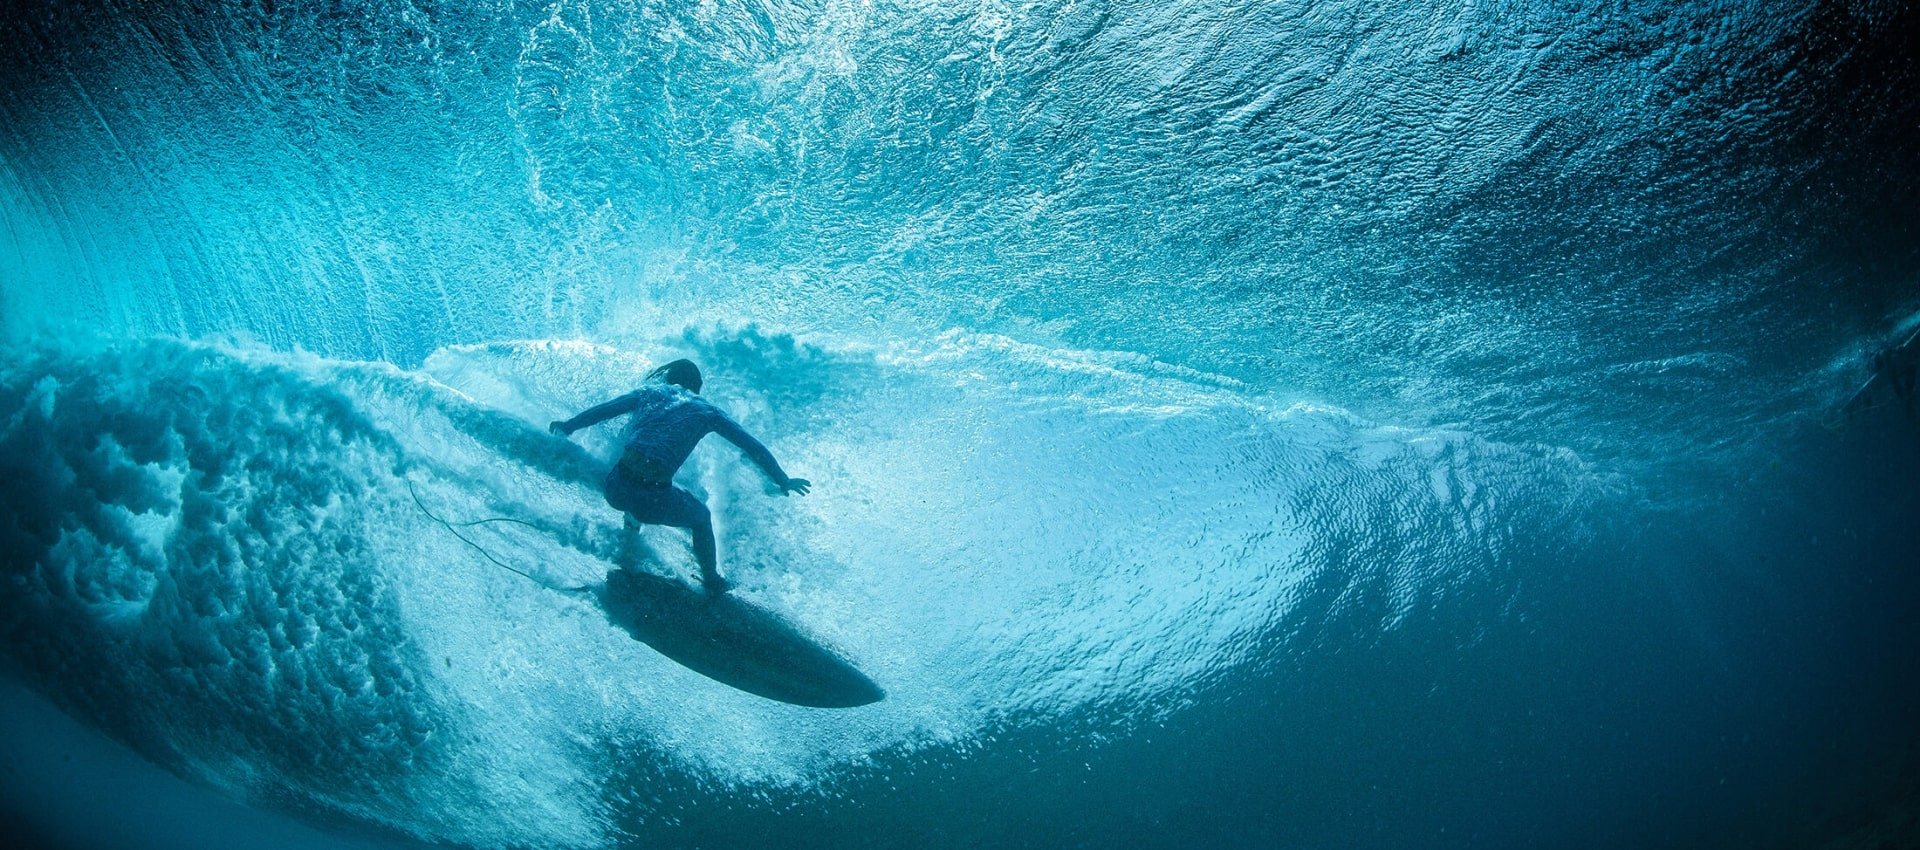 Surfer riding a wave in Waikiki